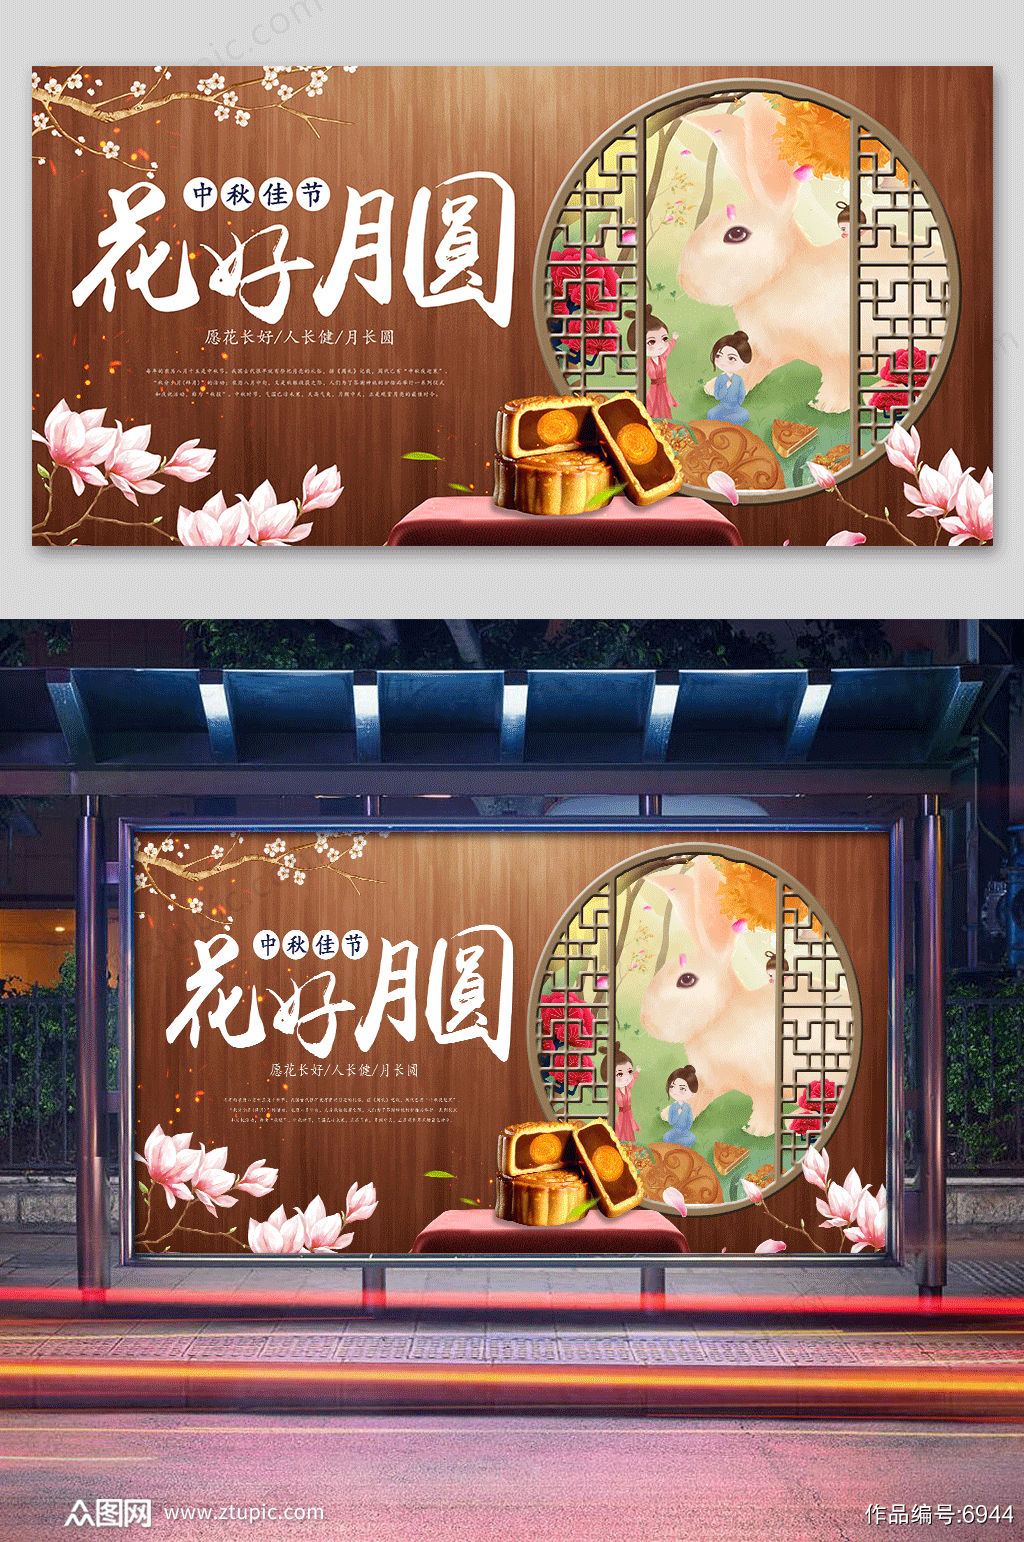 大气时尚传统节日中秋节海报设计素材